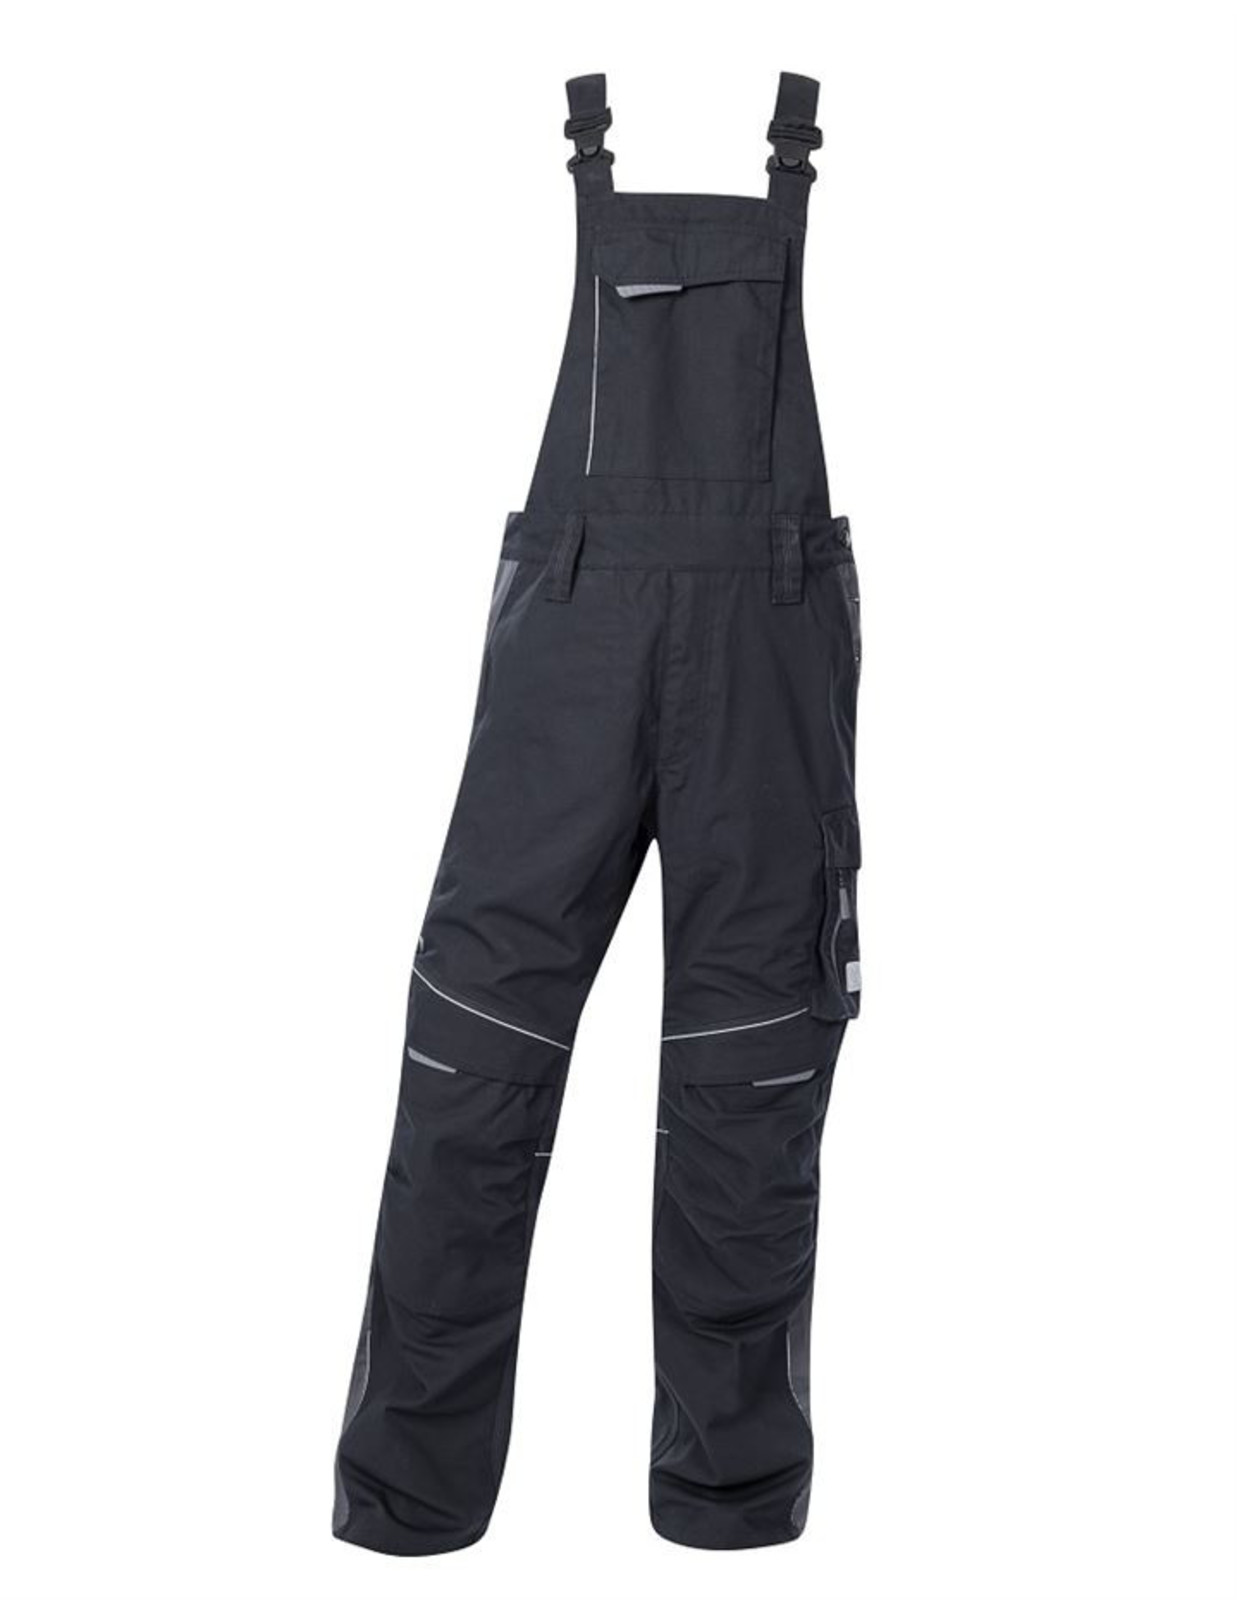 Pracovné nohavice na traky Ardon Urban+ - veľkosť: 52, farba: čierna/sivá